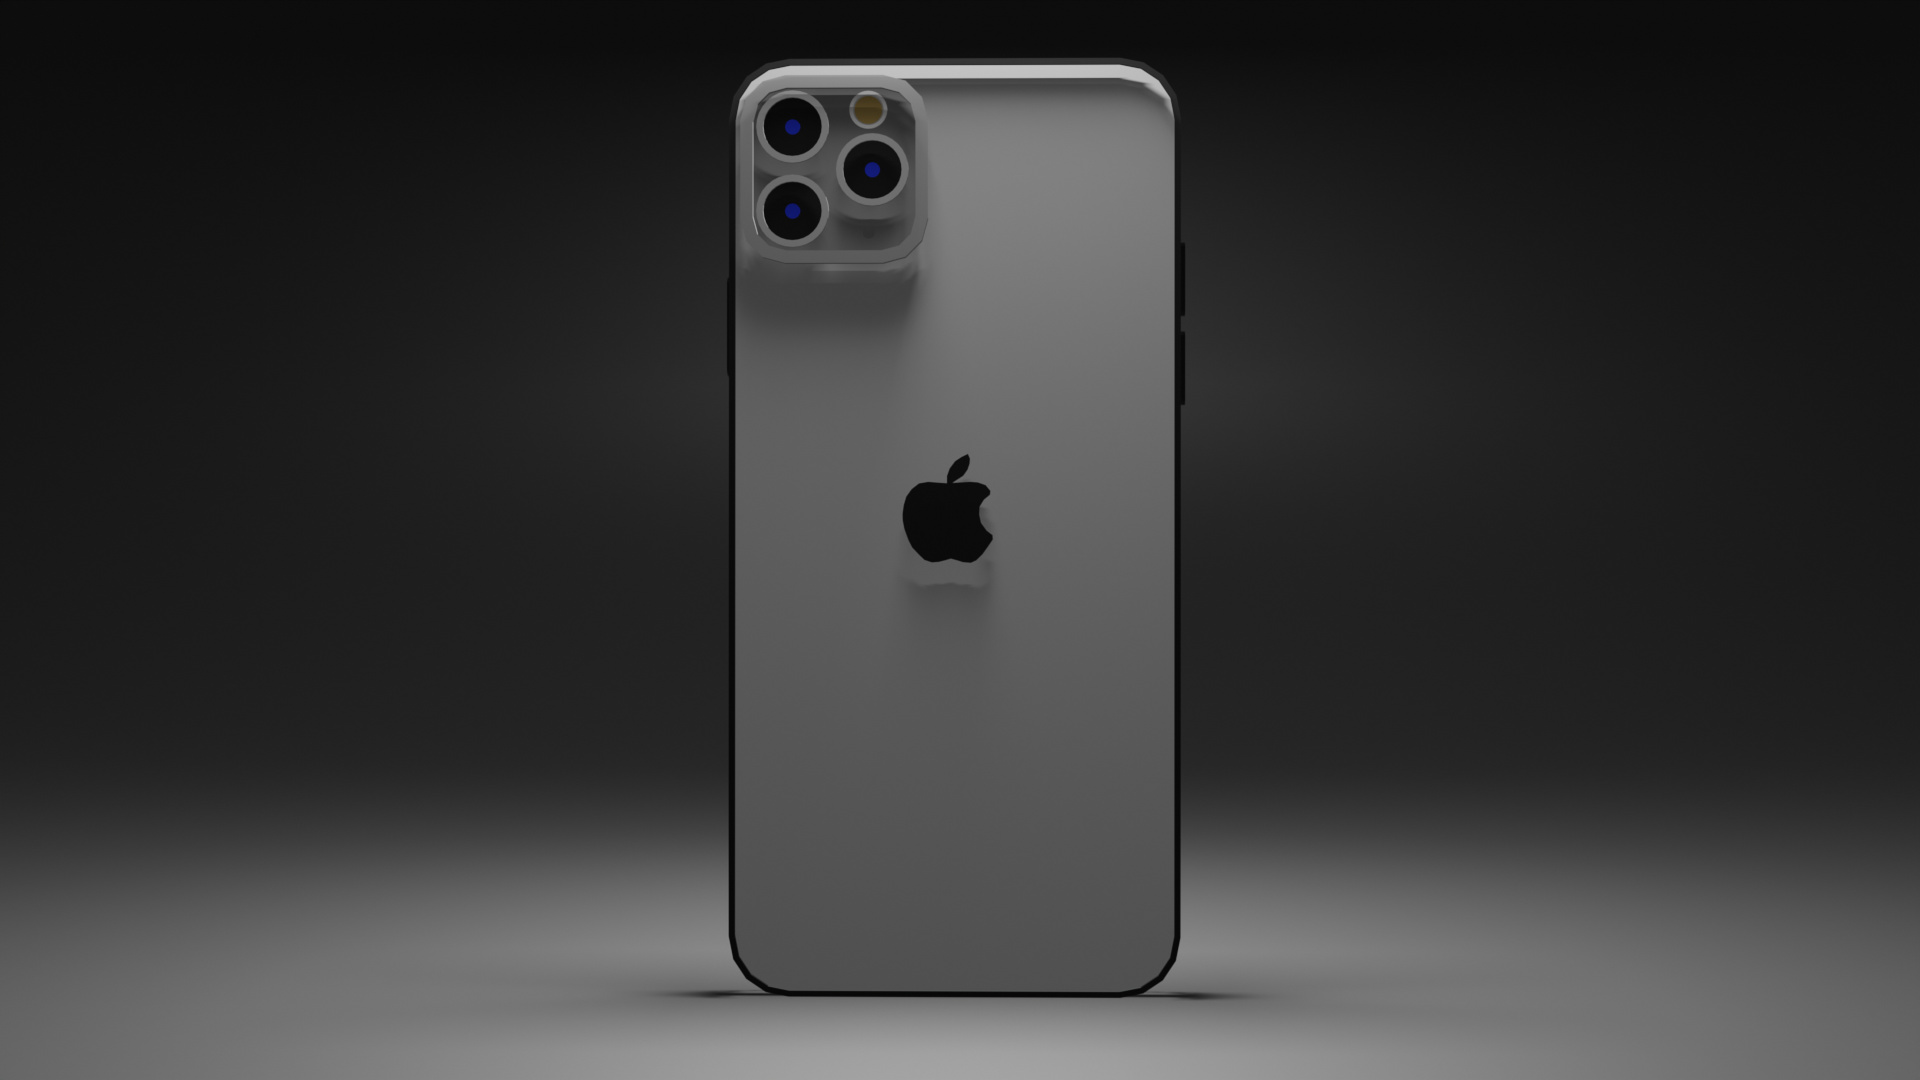 iPhone 11 Pro Max: Trải nghiệm đỉnh cao với chiếc điện thoại siêu phẩm iPhone 11 Pro Max. Với màn hình siêu lớn và hệ thống camera chuyên nghiệp, iPhone 11 Pro Max là người bạn đồng hành đắc lực cho những cuộc phiêu lưu. Ghé thăm hình ảnh liên quan để khám phá thêm về vẻ đẹp hoàn hảo của iPhone 11 Pro Max.